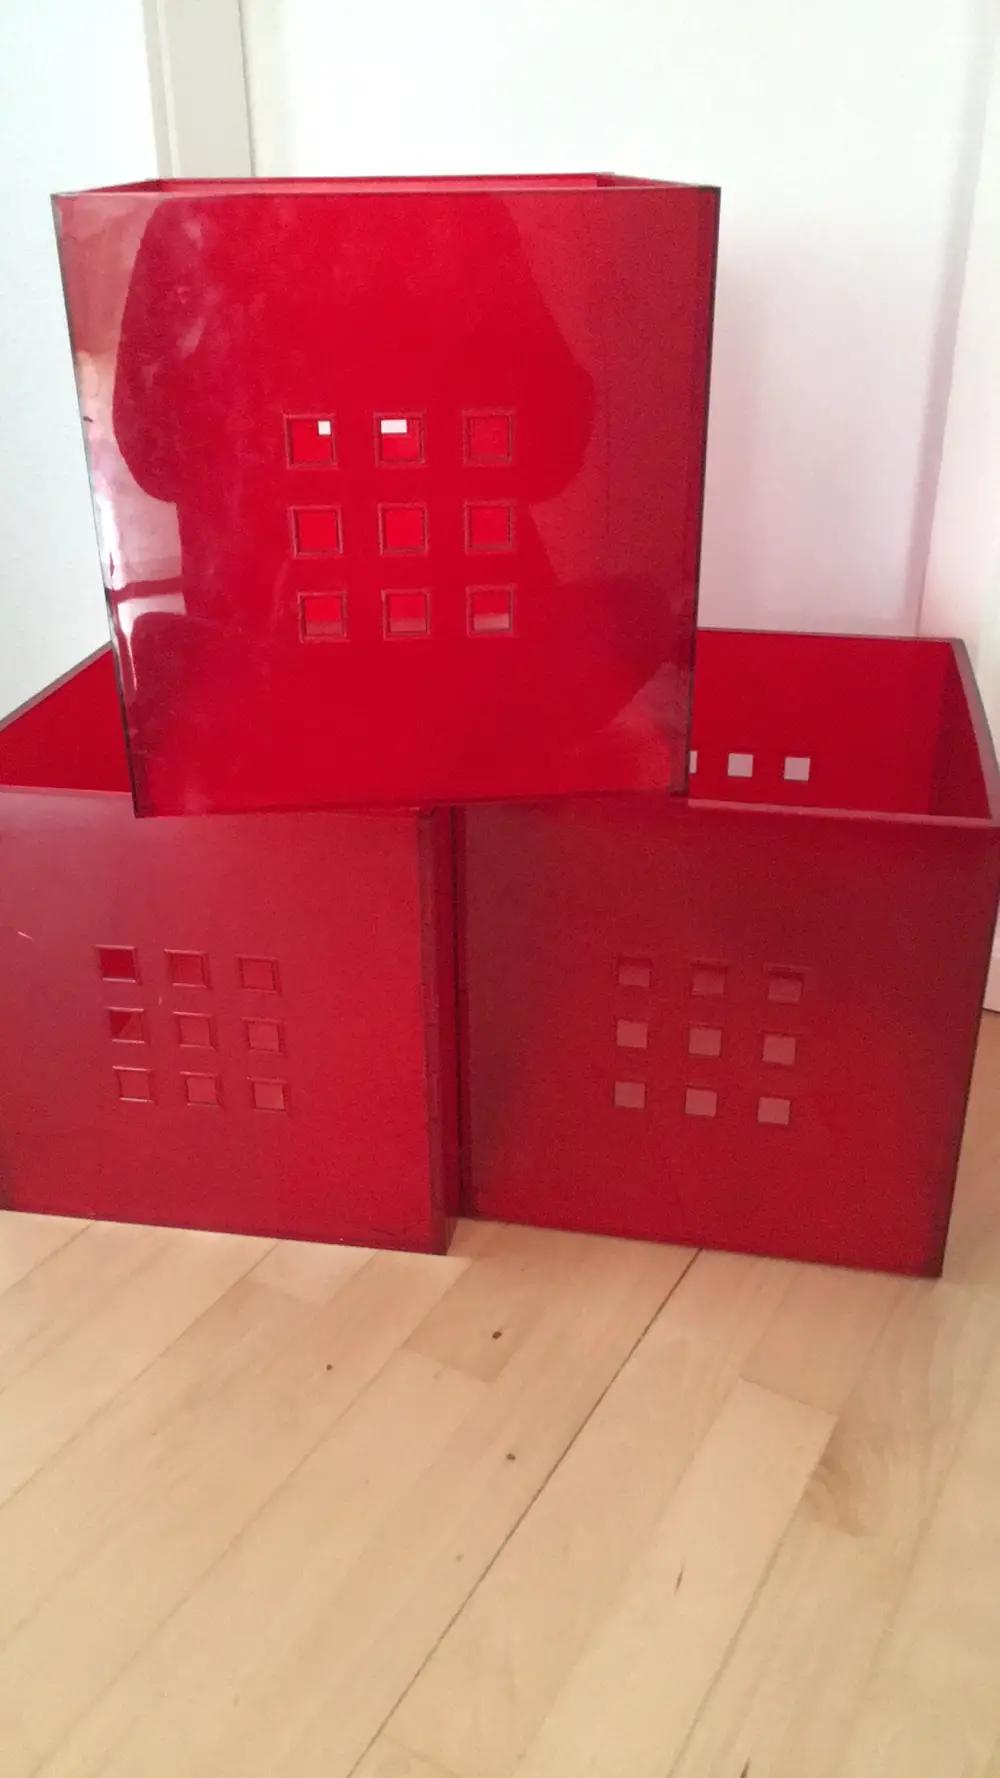 Der er behov for Kritisk Monetære Køb Ikea Kasser til rumdeler af Gitte på Reshopper · Shop secondhand til  børn, mor og bolig